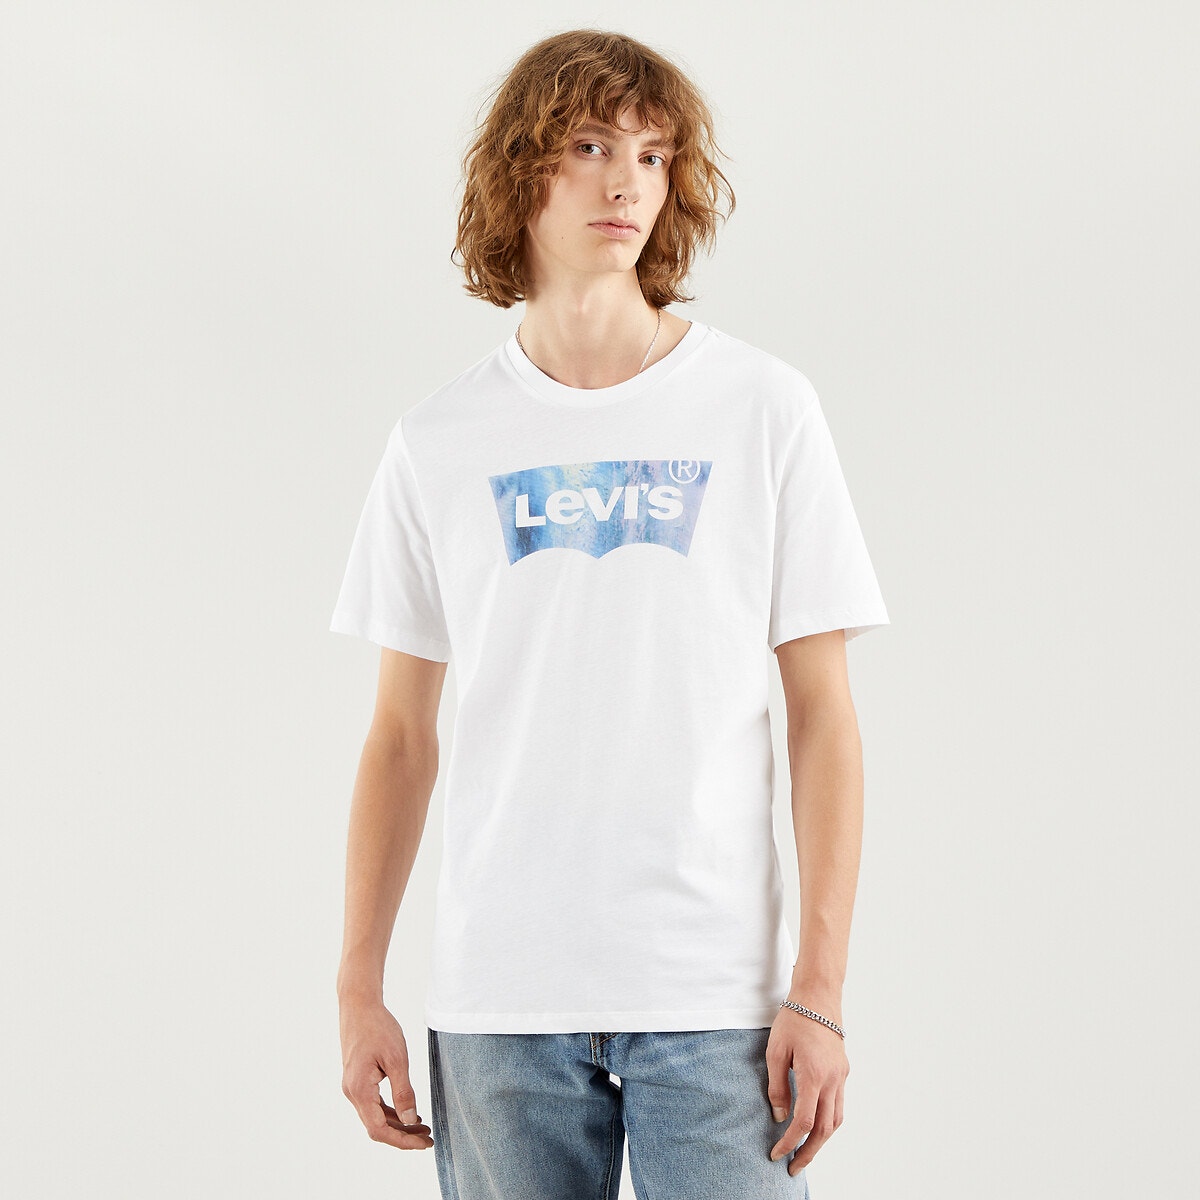 ΑΝΔΡΑΣ | Μπλούζες & Πουκάμισα | T-shirts Κοντομάνικο T-shirt με λογότυπο, Batwing